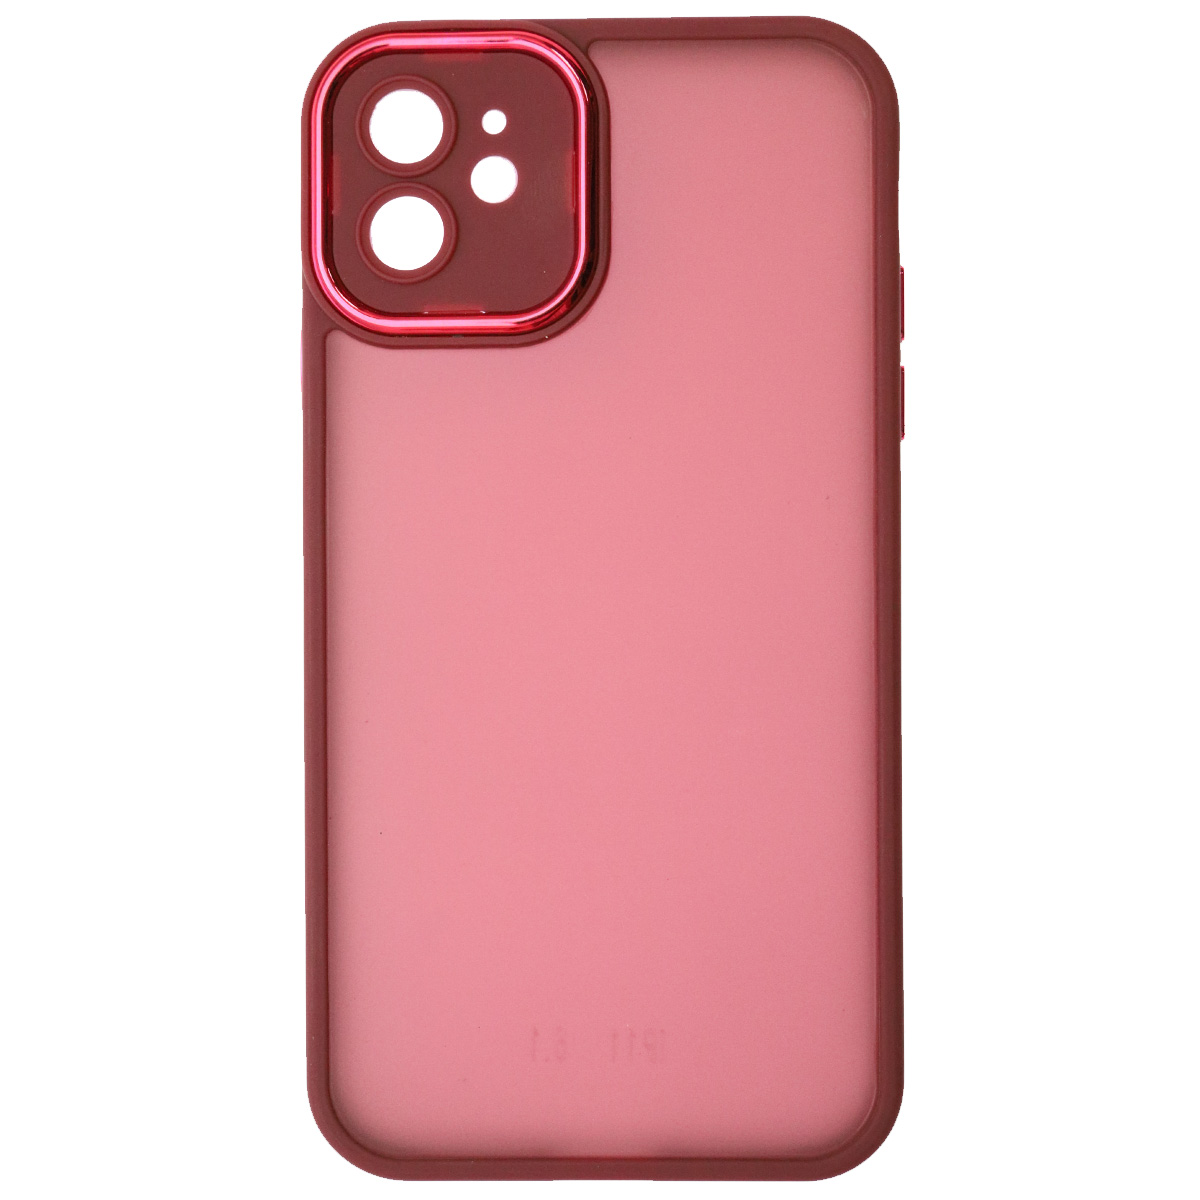 Чехол накладка KING для APPLE iPhone 11, силикон, пластик, защита камеры, цвет окантовки бордовый